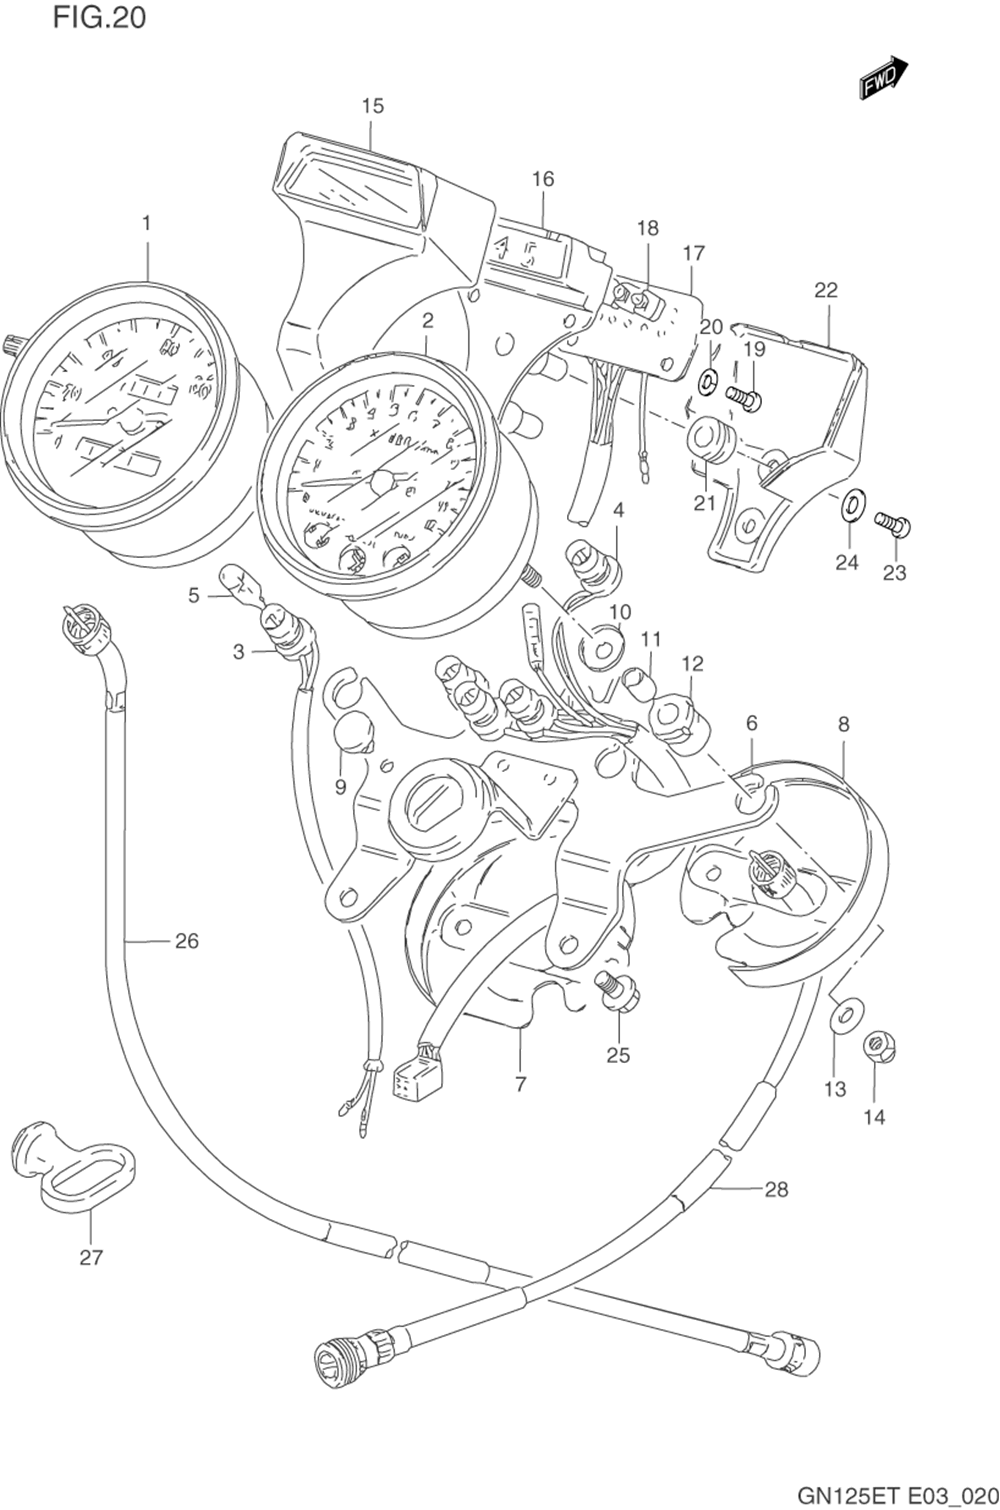 Speedometer - tachometer